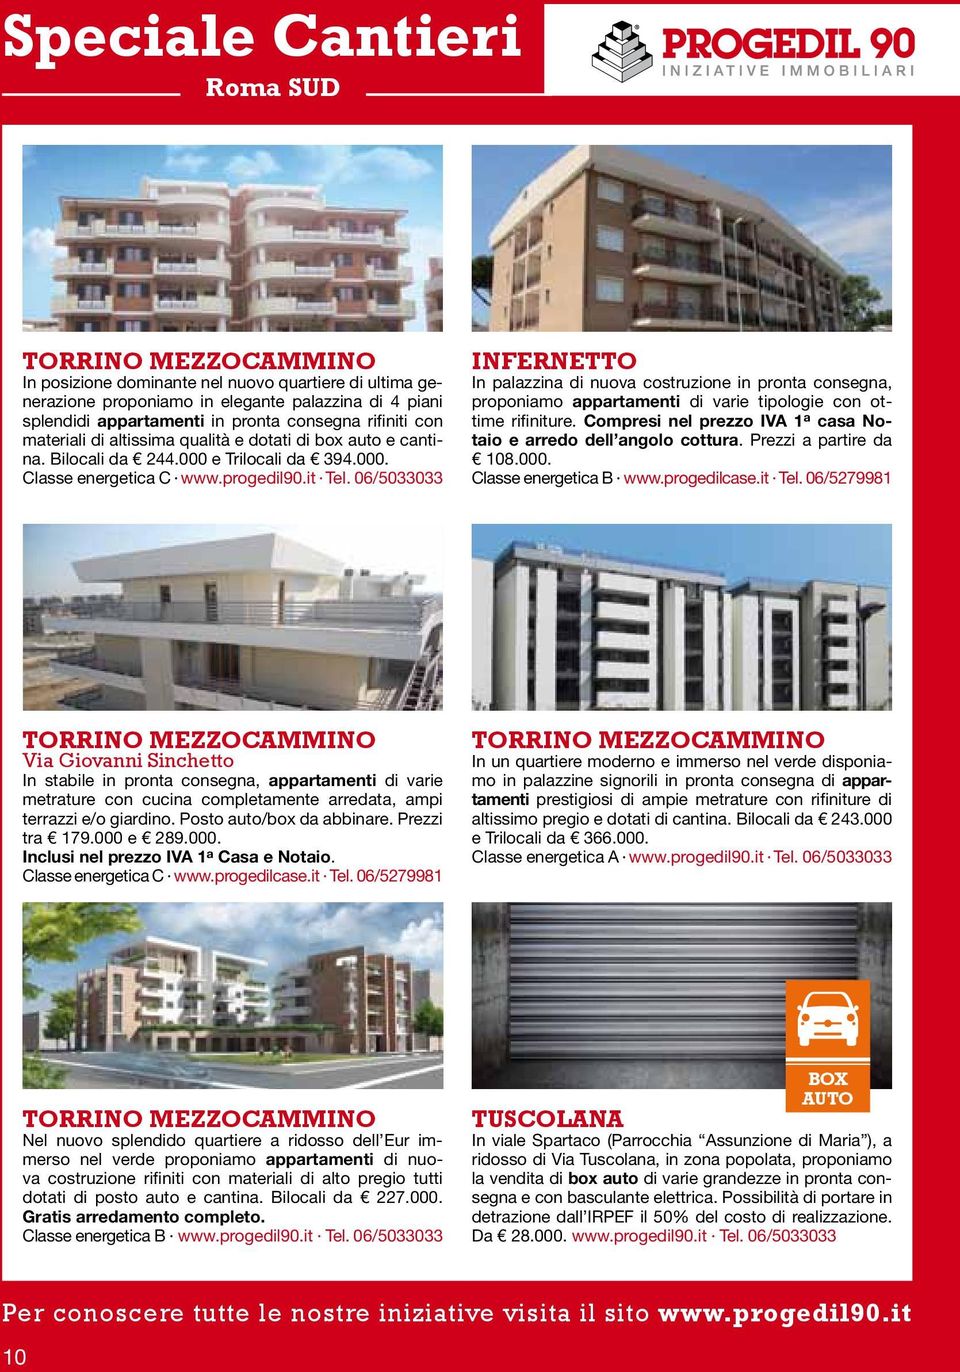 06/5033033 INFERNETTO In palazzina di nuova costruzione in pronta consegna, proponiamo appartamenti di varie tipologie con ottime rifiniture.